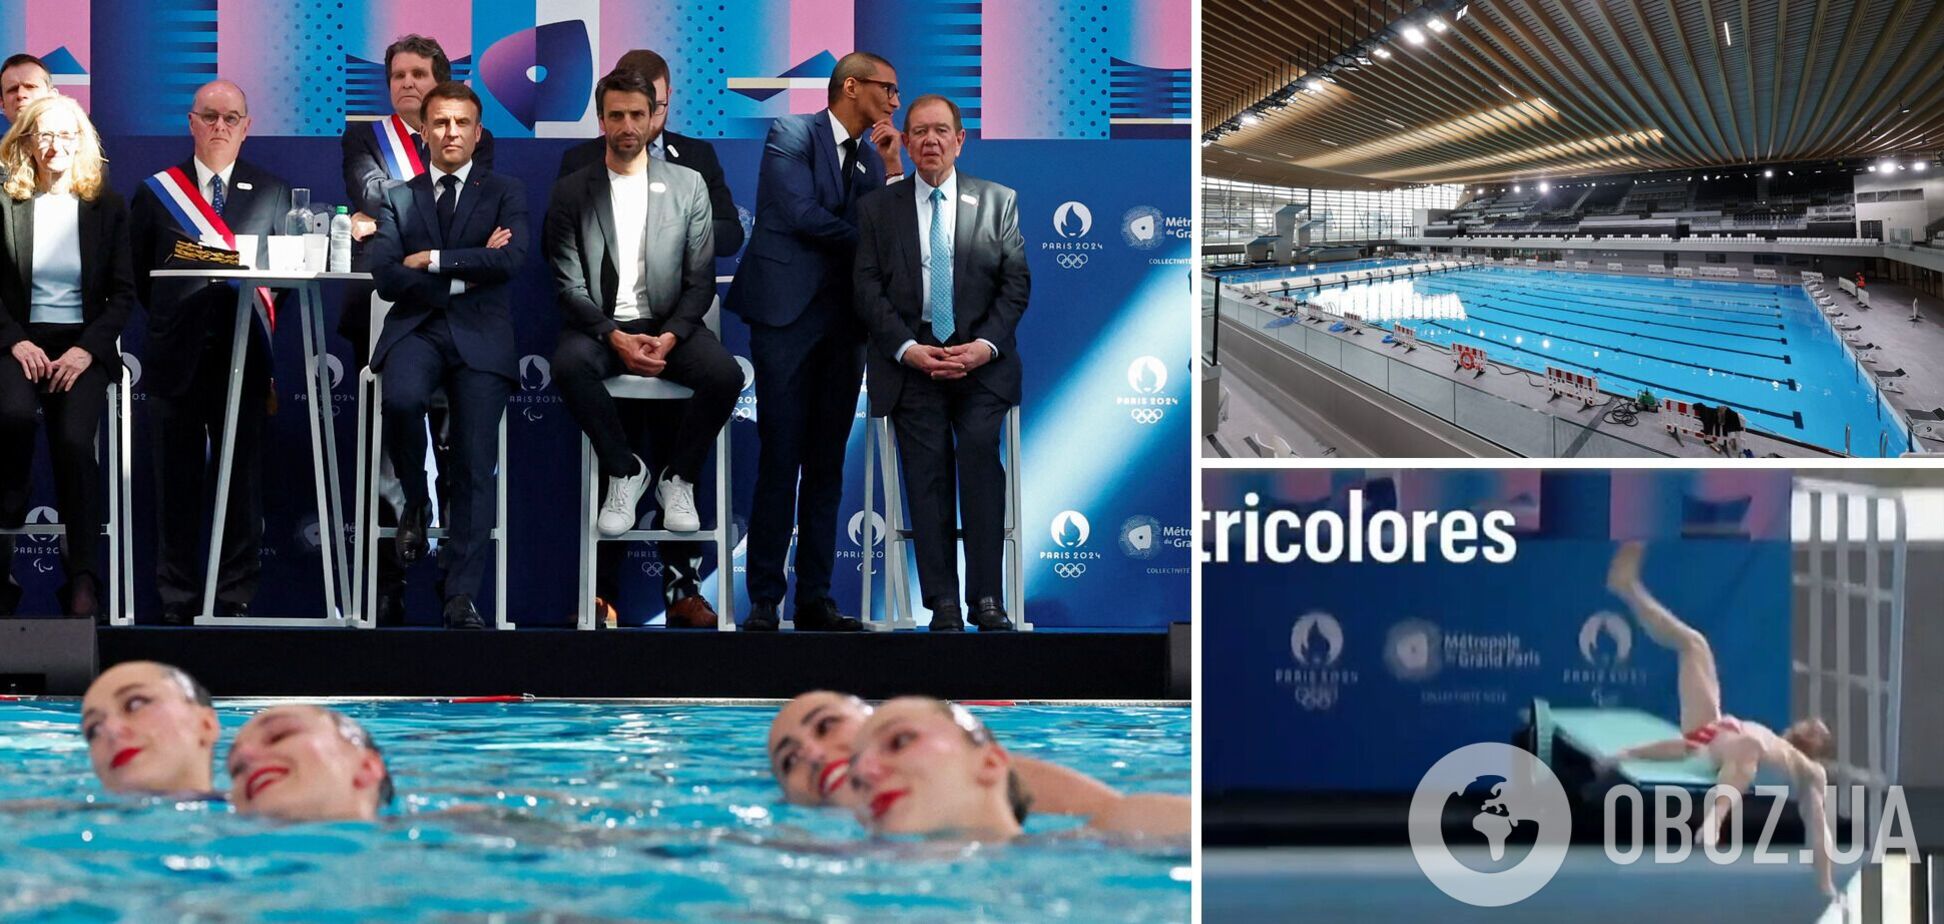 На очах у Макрона... У Парижі відкриття Олімпійського Aquatics центру пішло не за планом. Відео